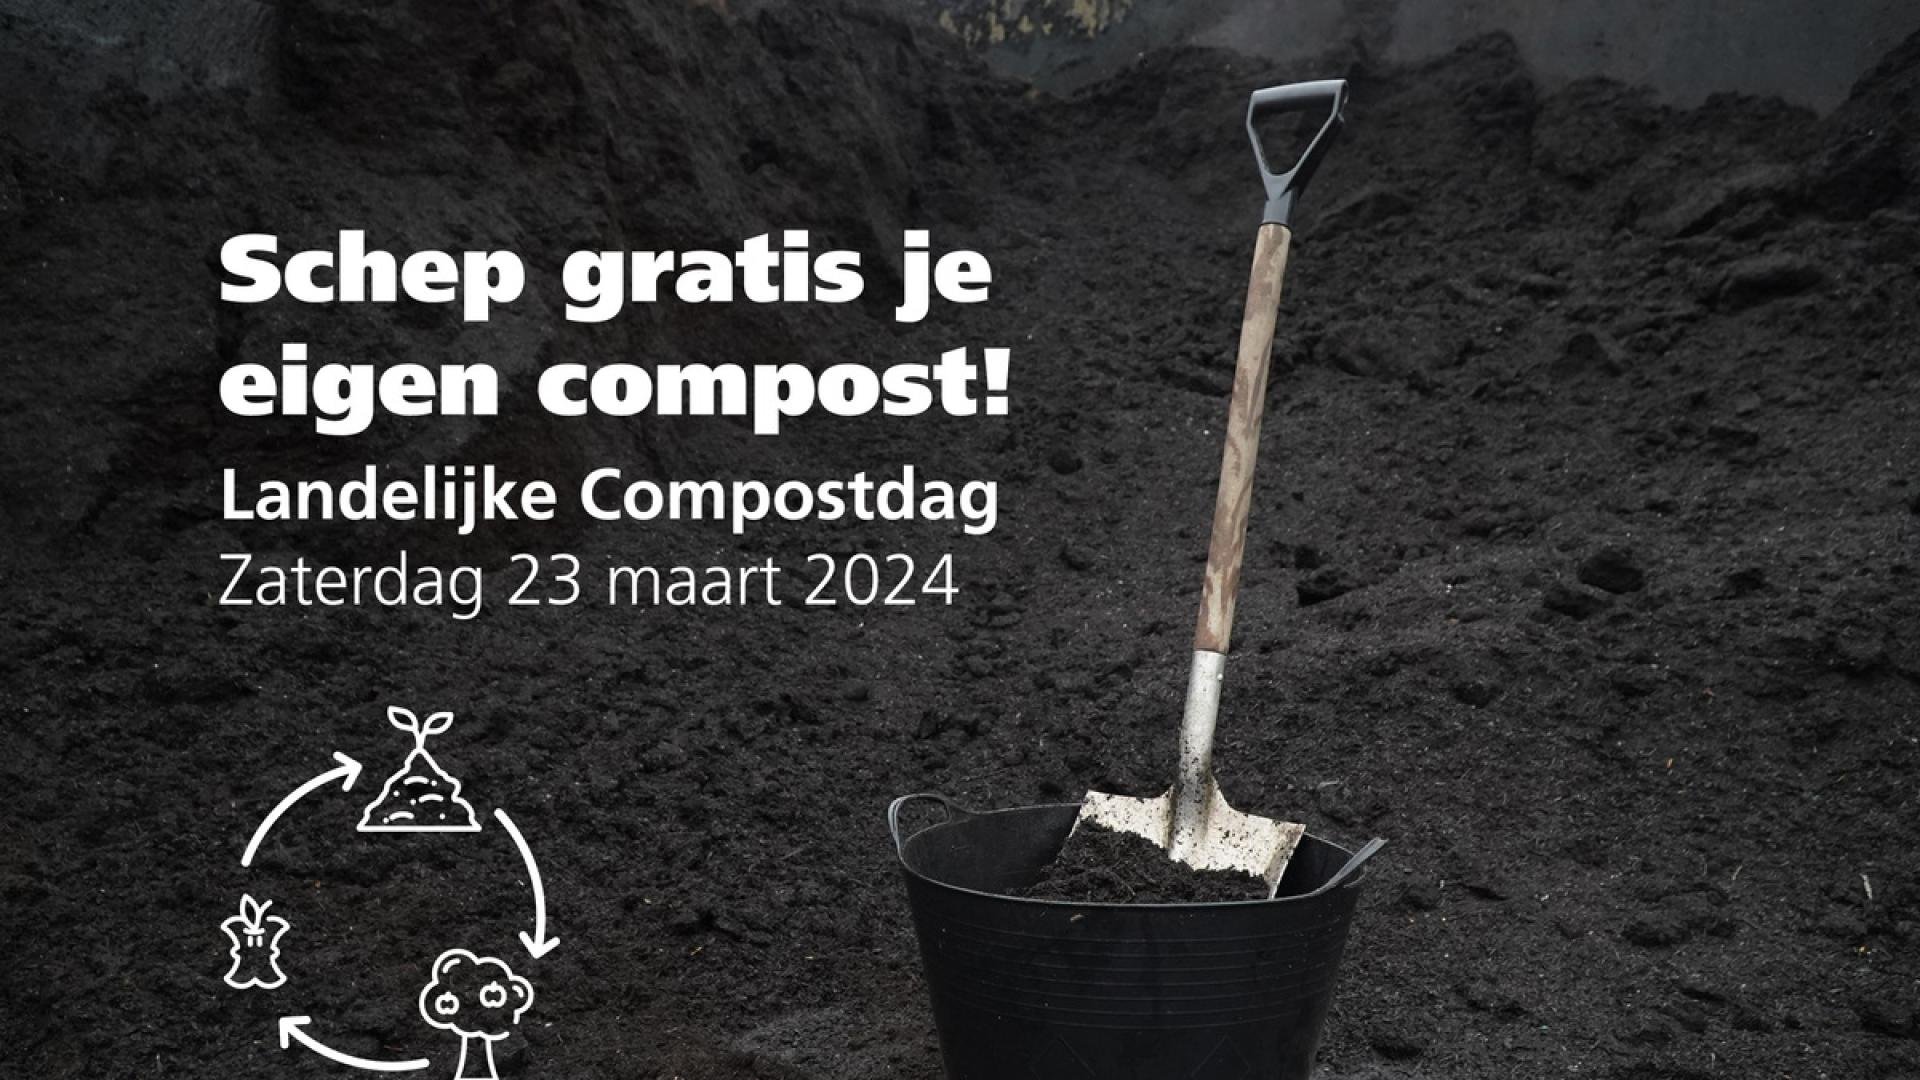 Inwoners kunnen op verschillende locaties gratis compost scheppen